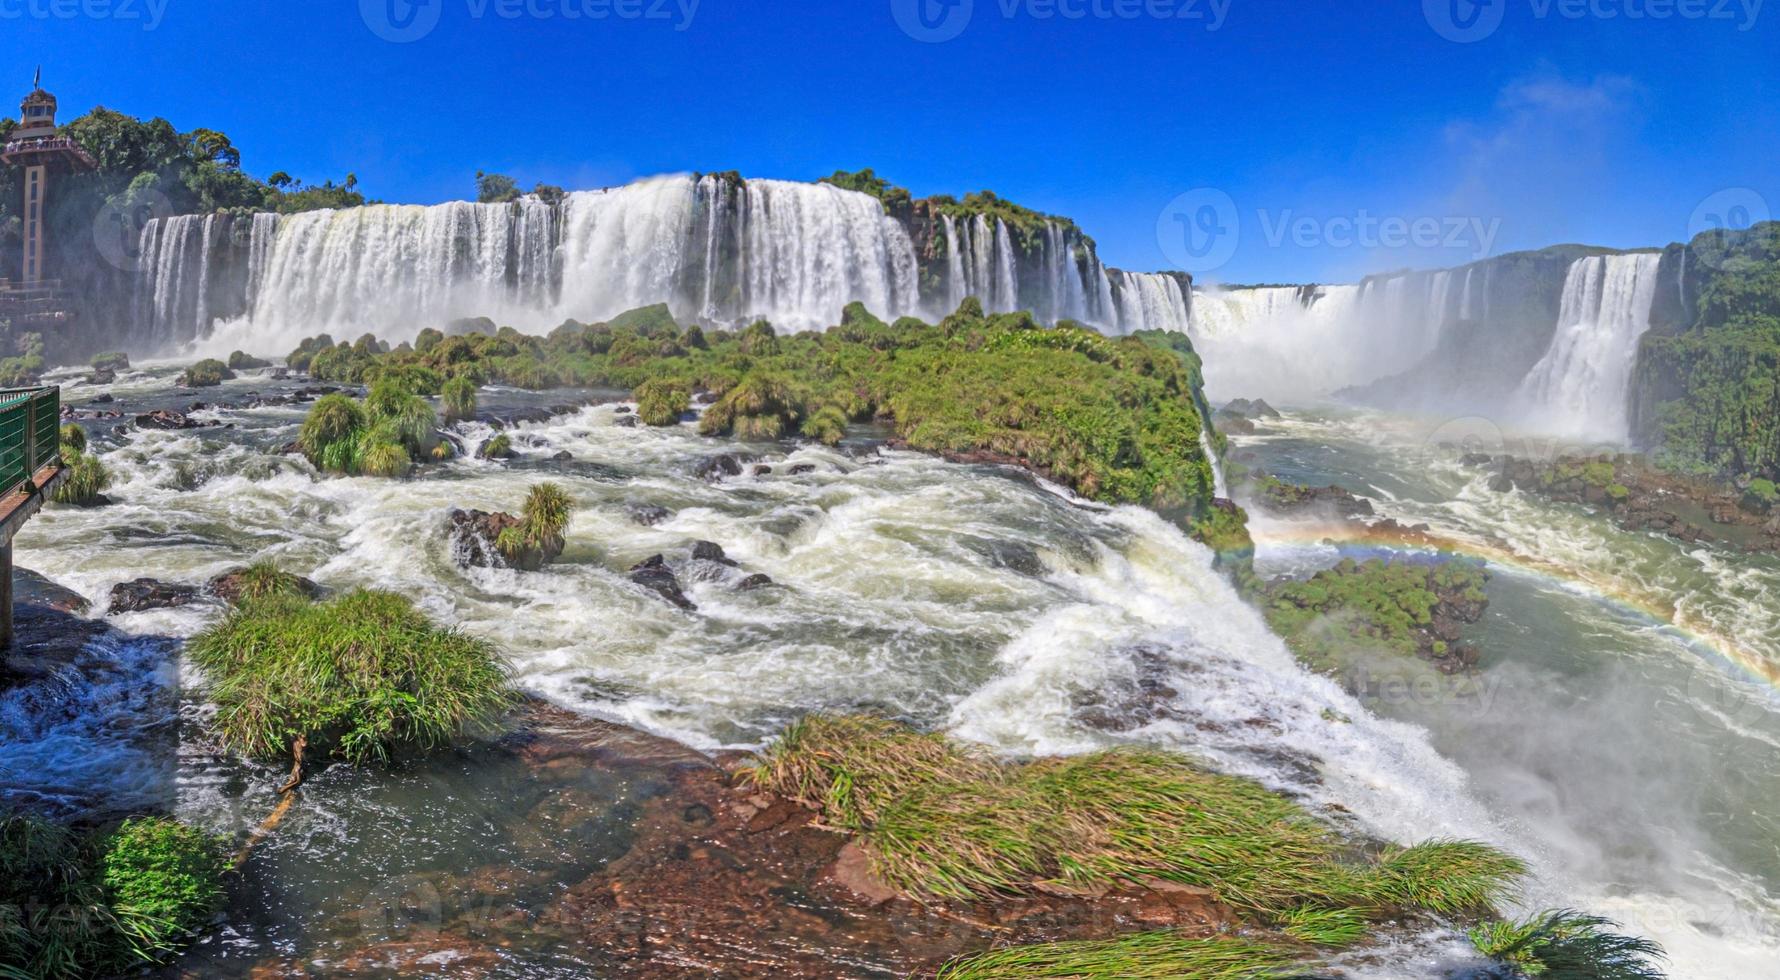 foto del espectacular parque nacional iguacu con las impresionantes cascadas en la frontera entre argentina y brasil